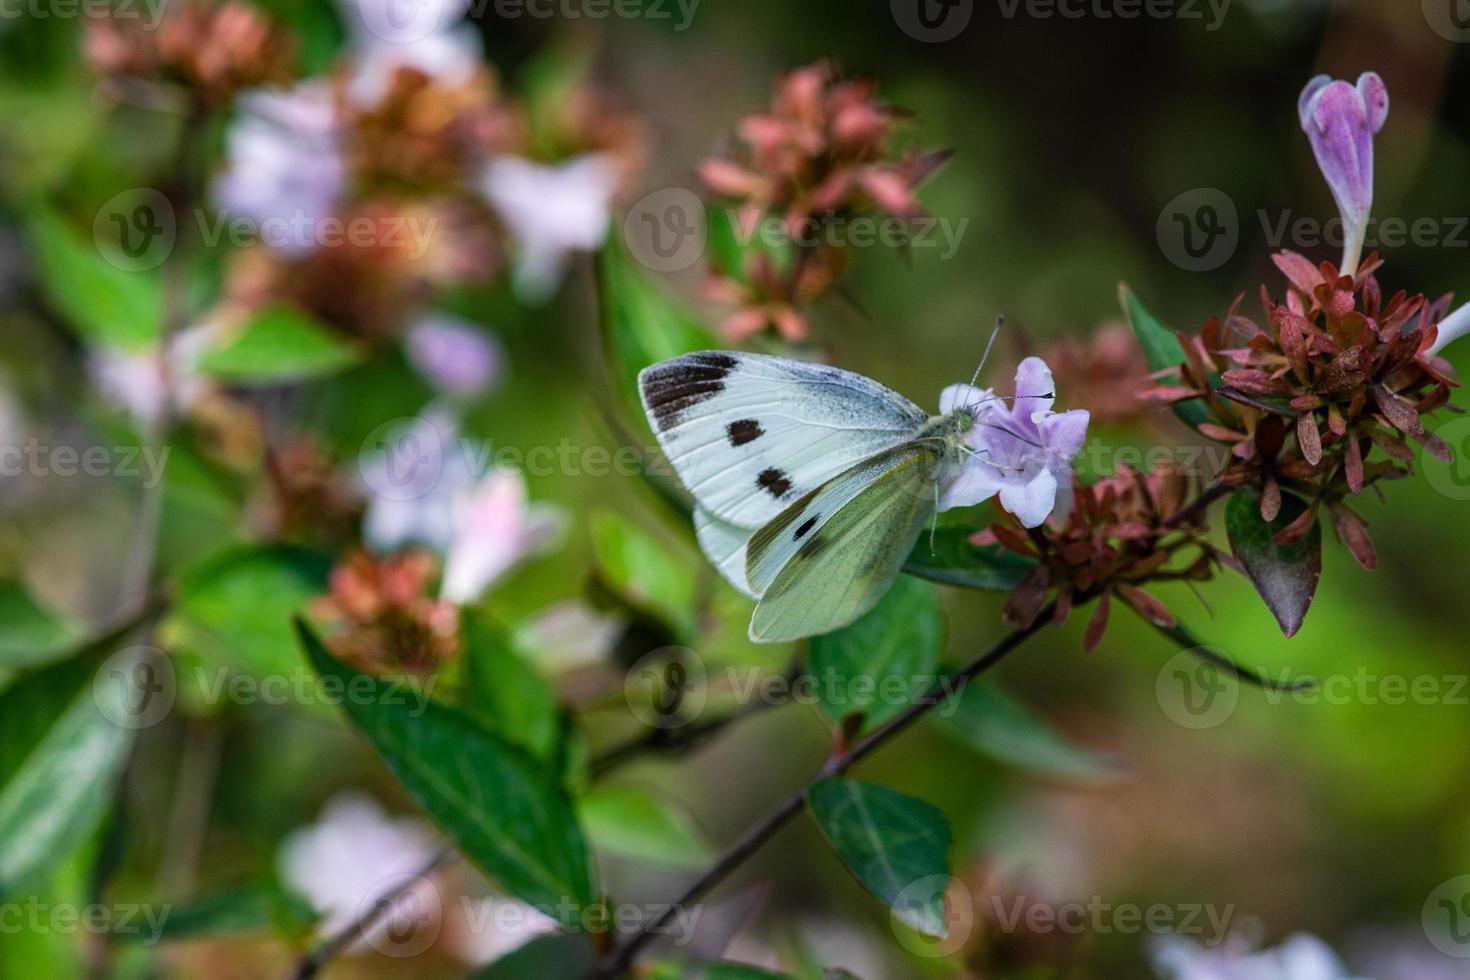 prachtige vlinder op de bloem in een tuin foto